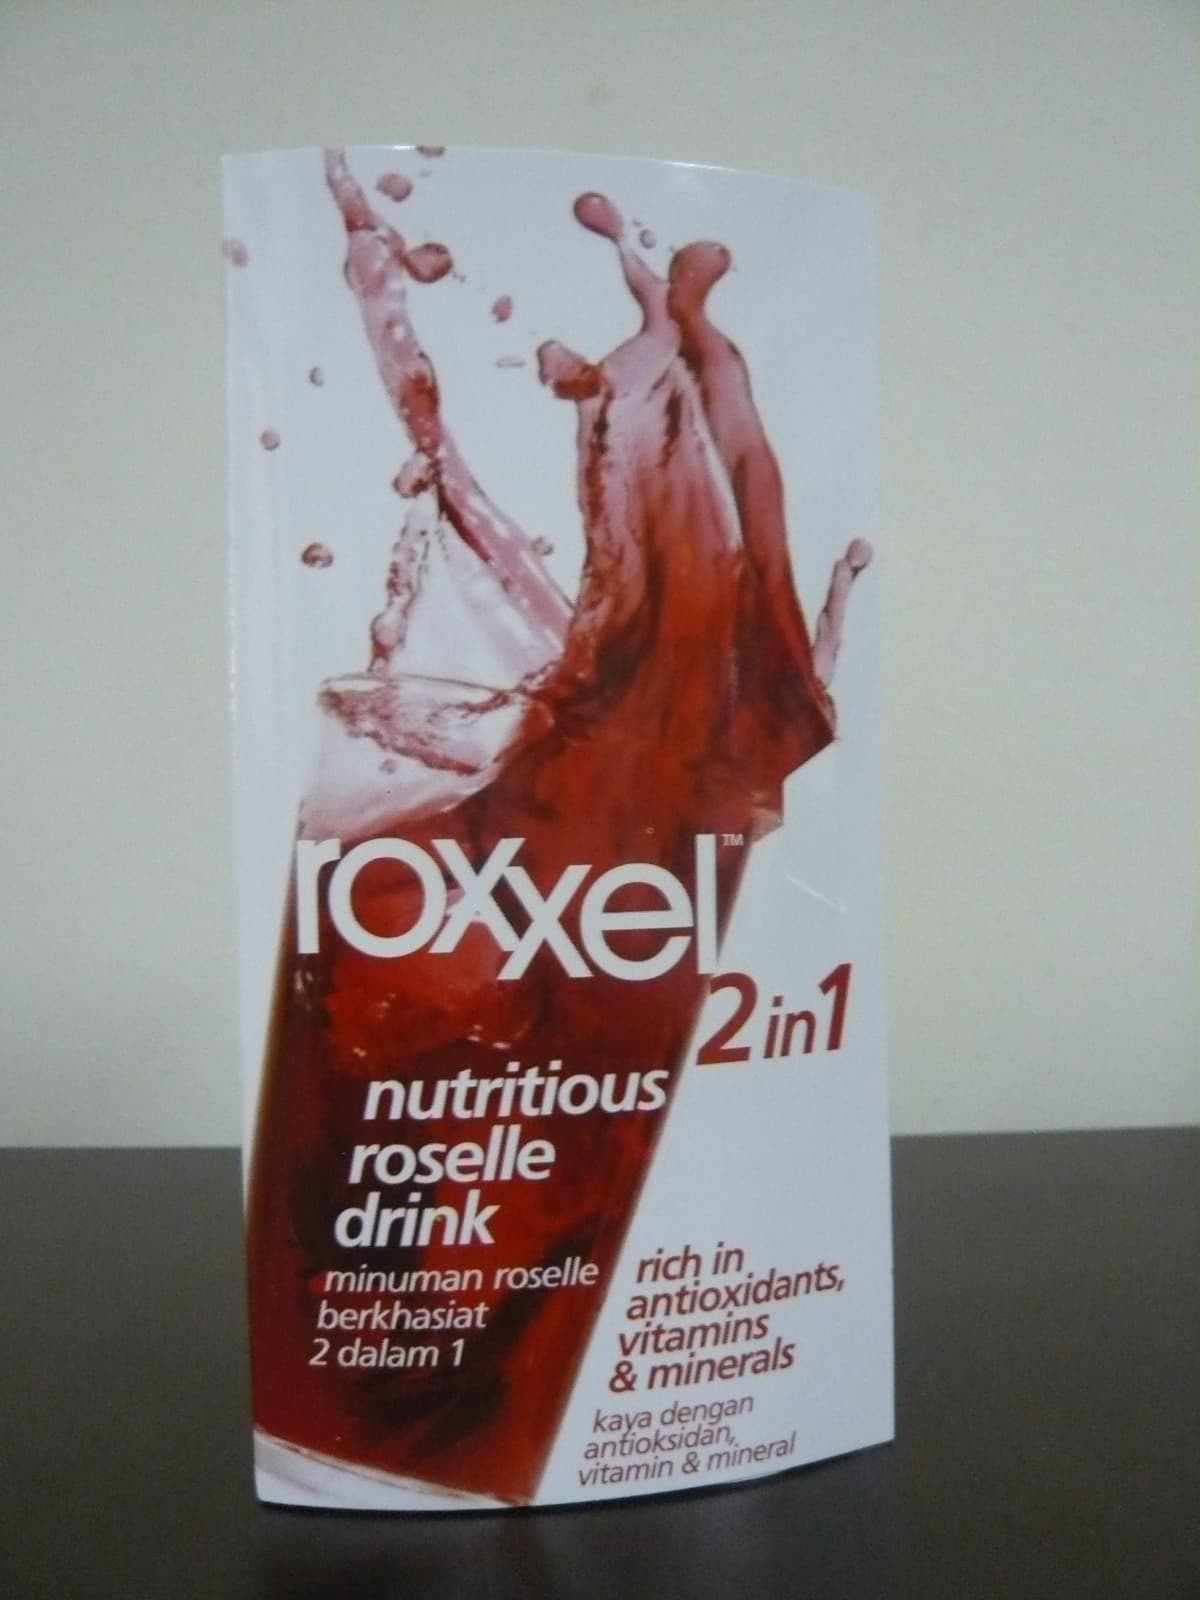 Roxxel 2 in 1 gift pack